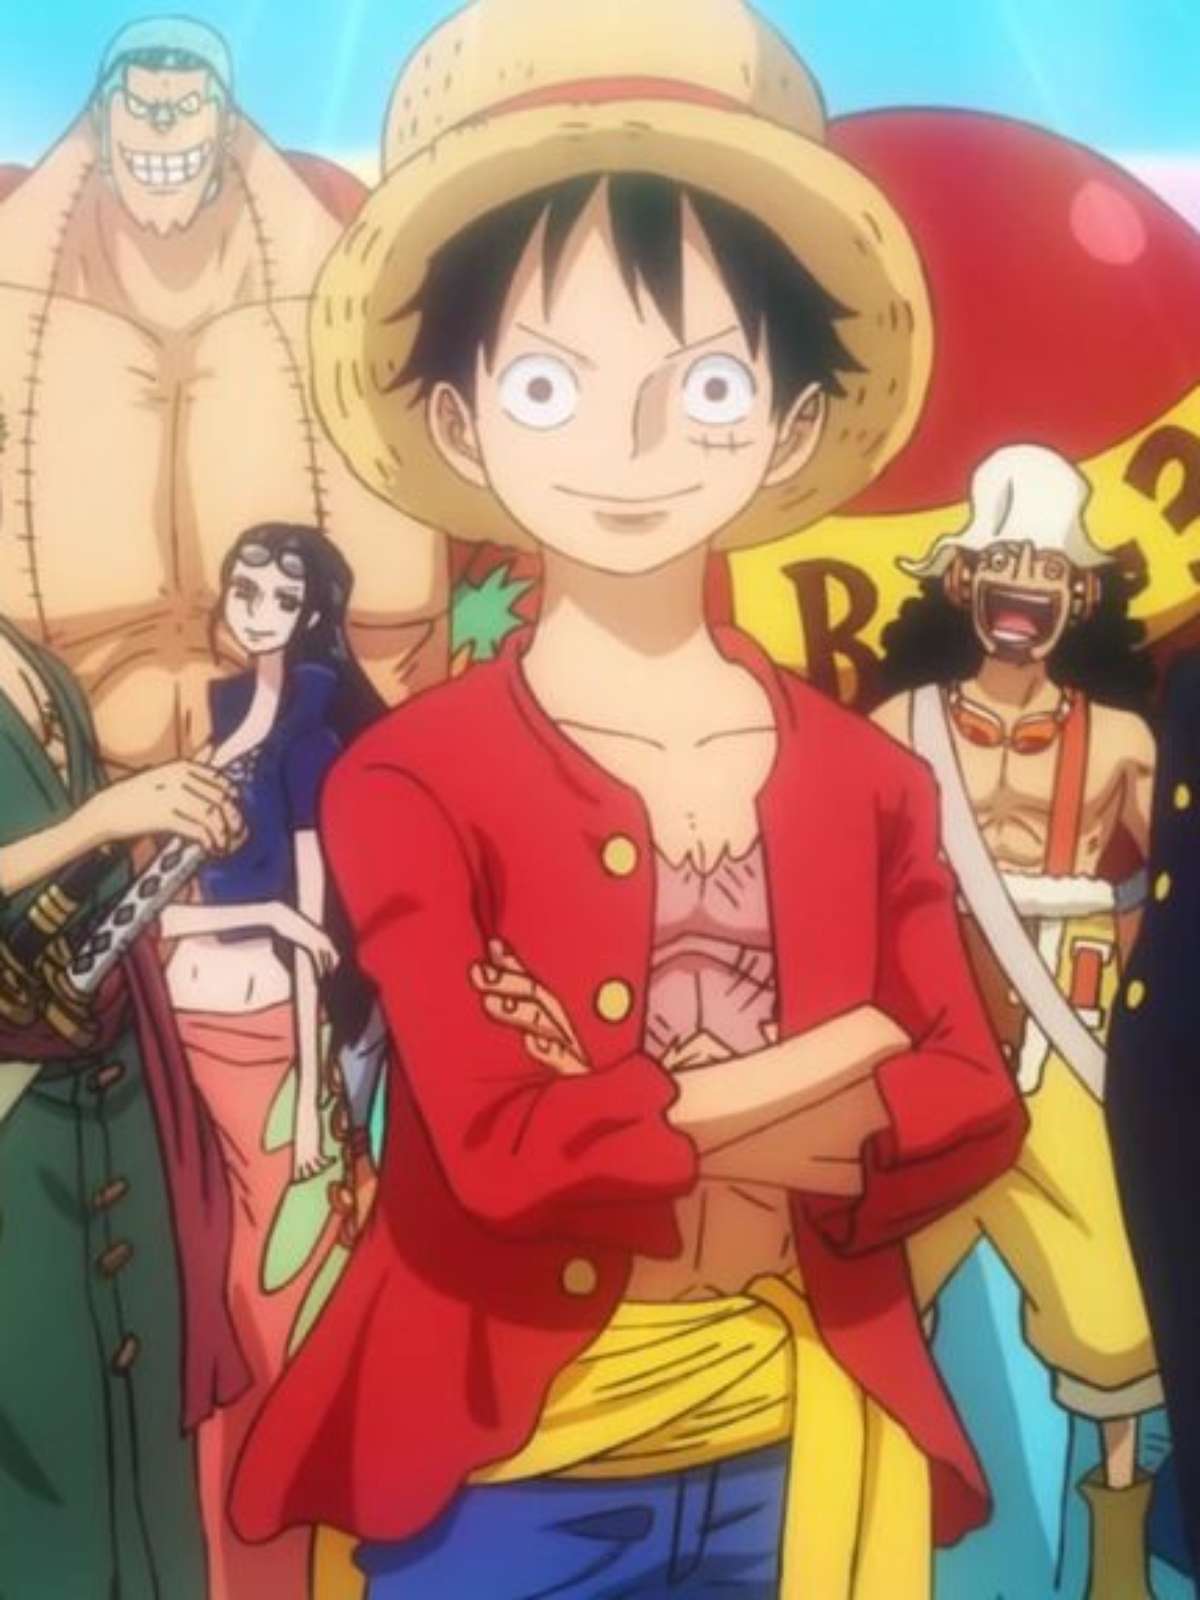 Primeiros episódios de One Piece chegam à Netflix em outubro